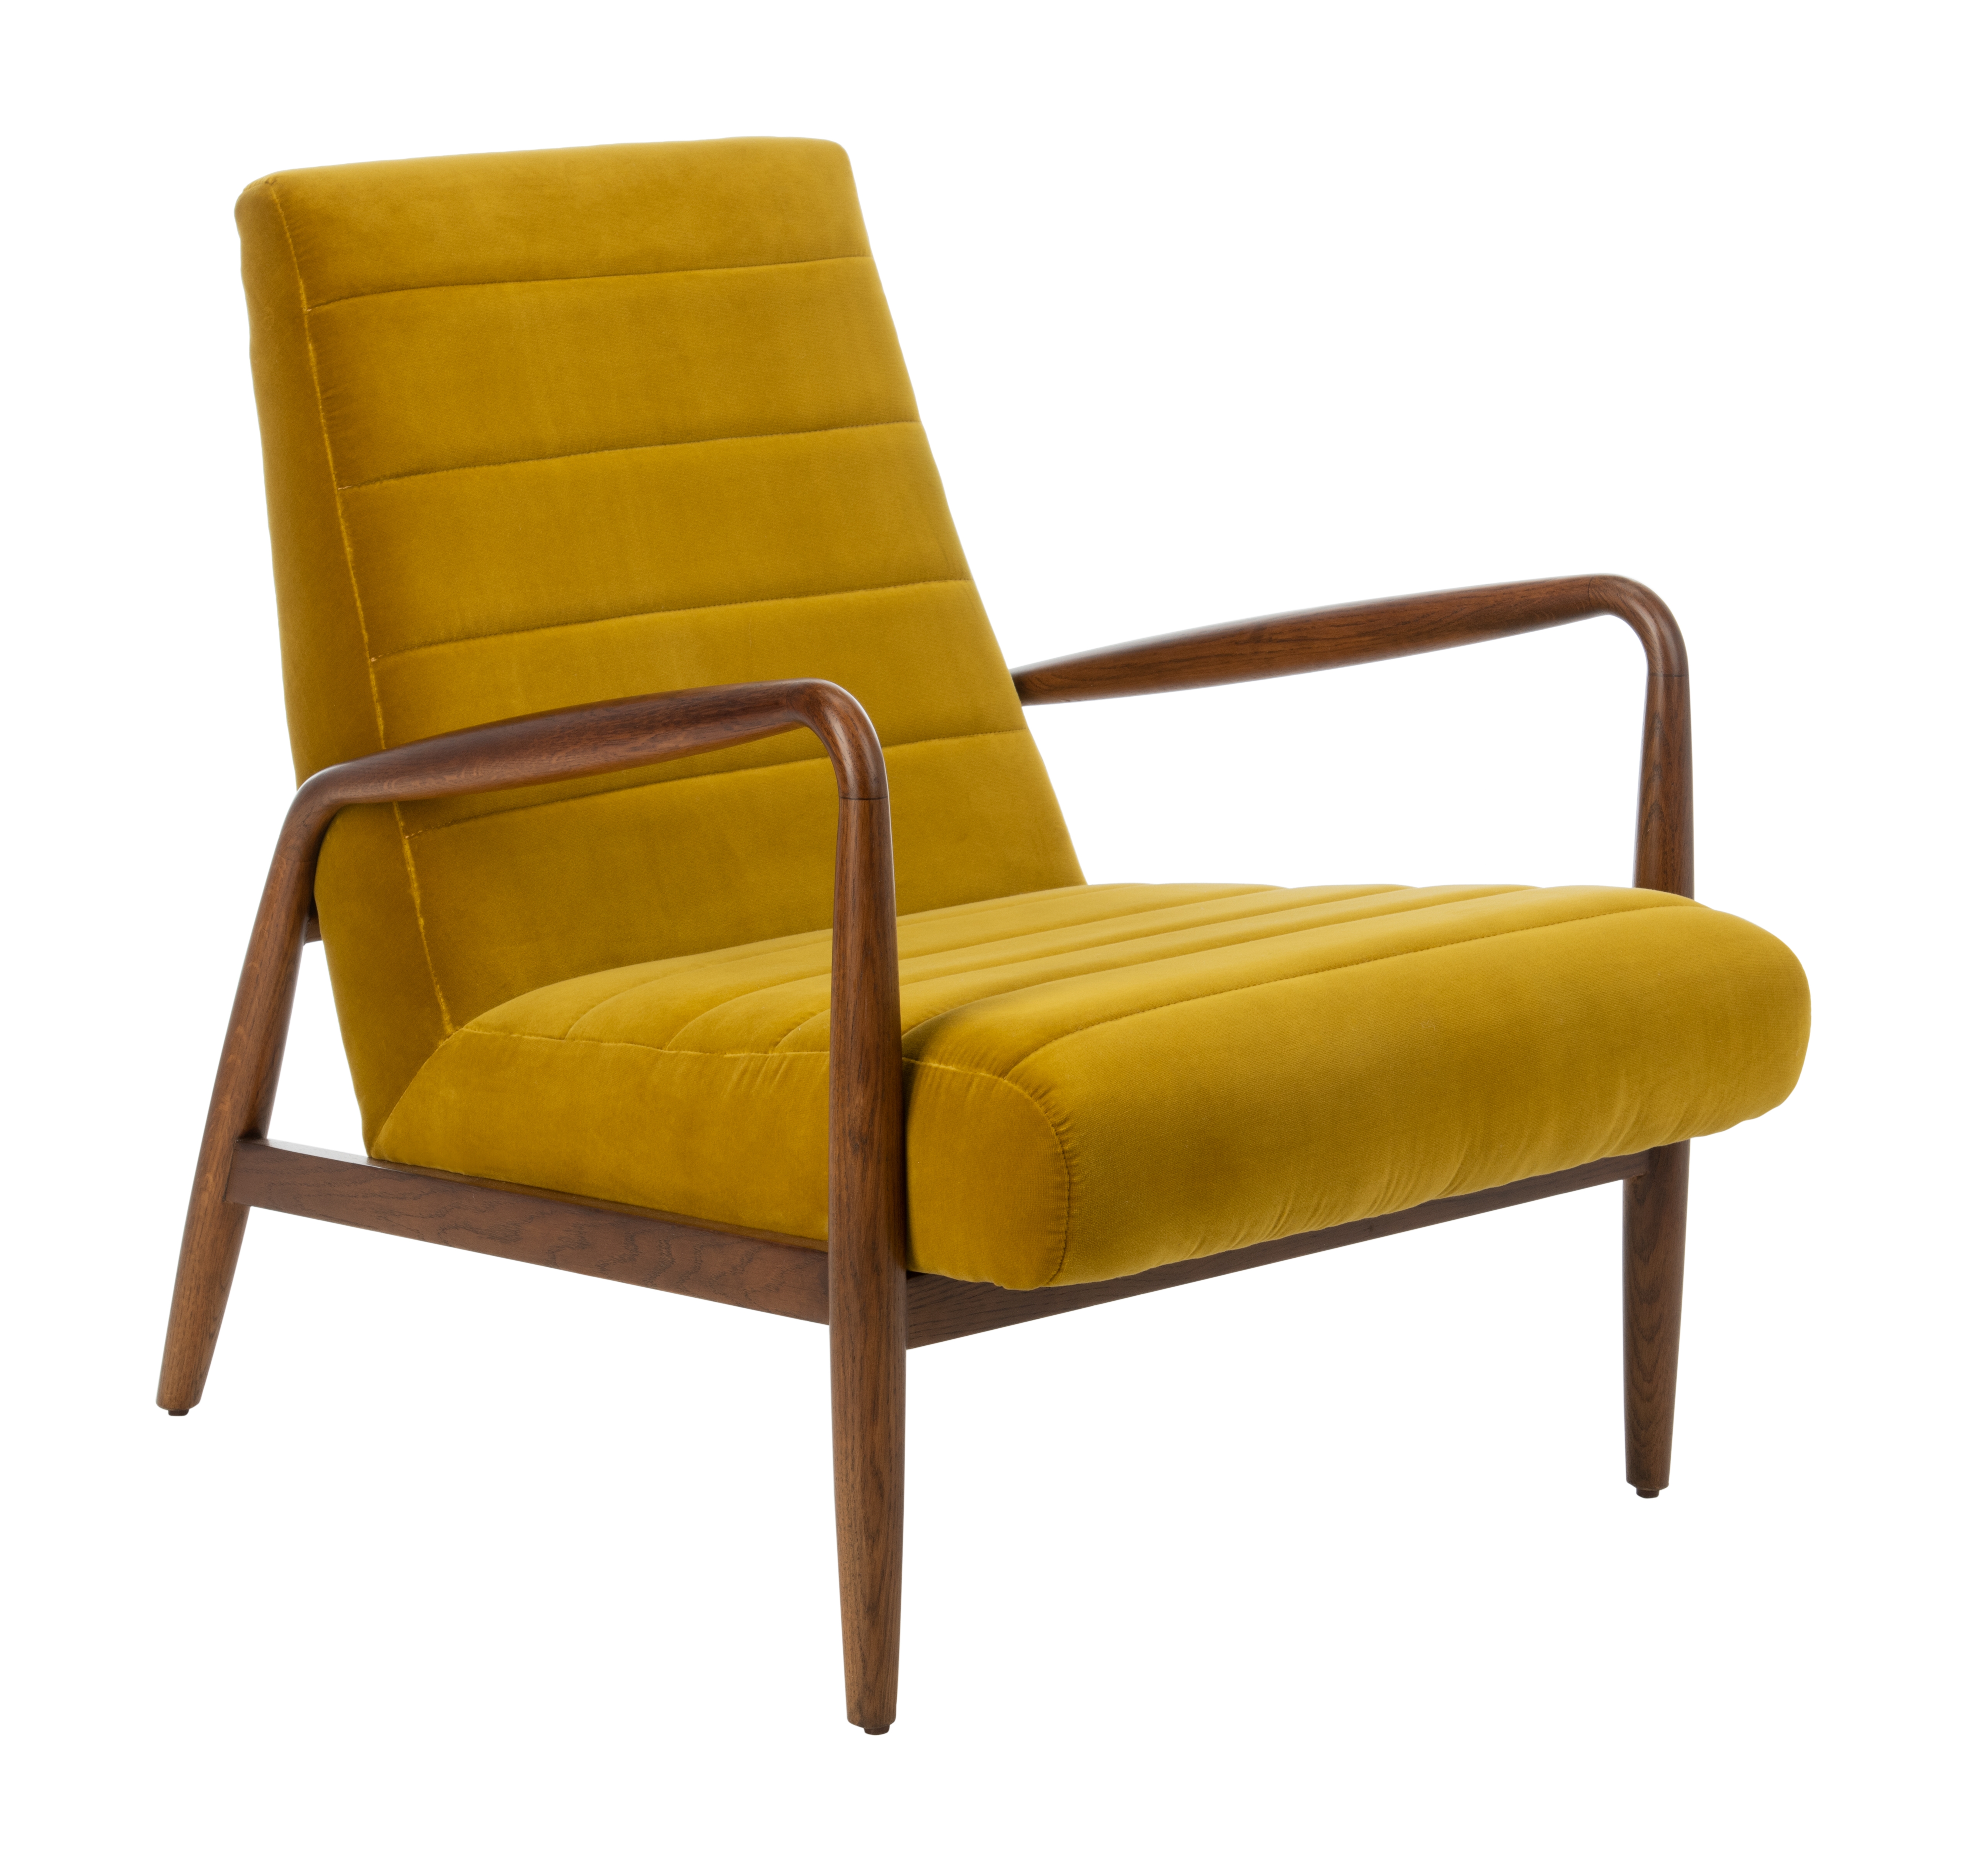 Willow Channel Tufted Arm Chair - Gold/Dark Walnut - Safavieh - Image 0